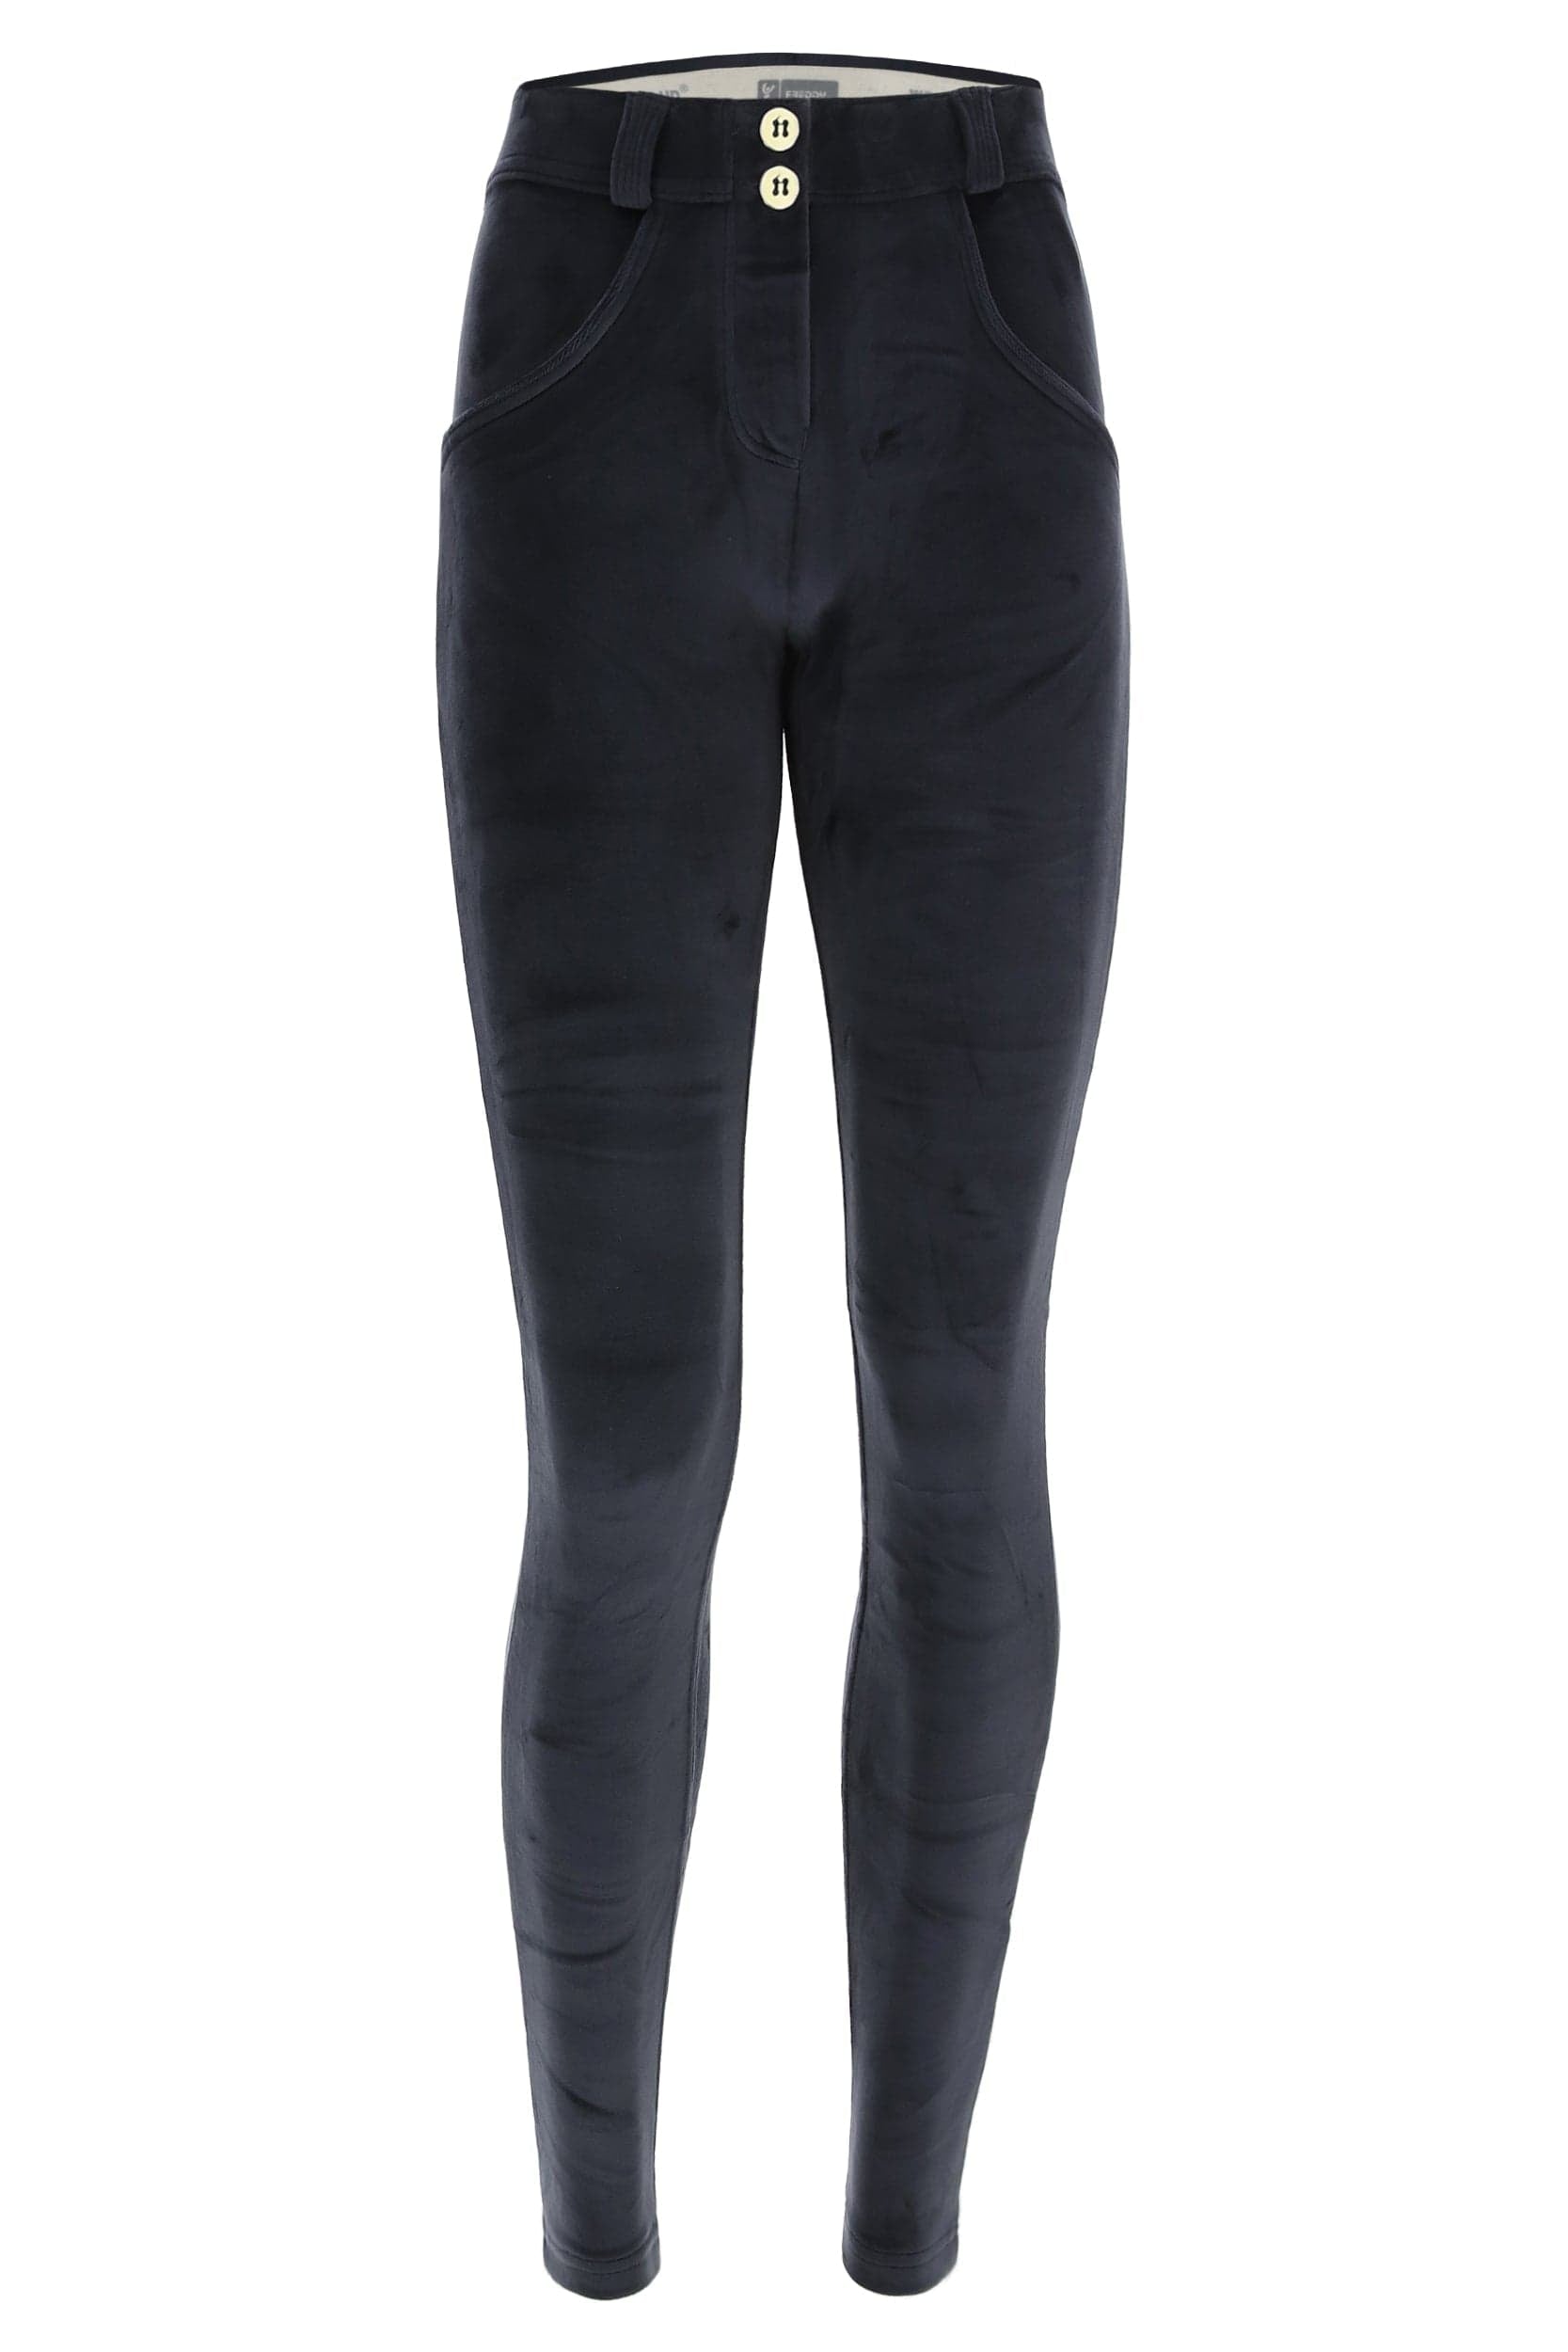 WR.UP® Velvet Trousers - Mid Rise - Full Length - Navy Blue 2